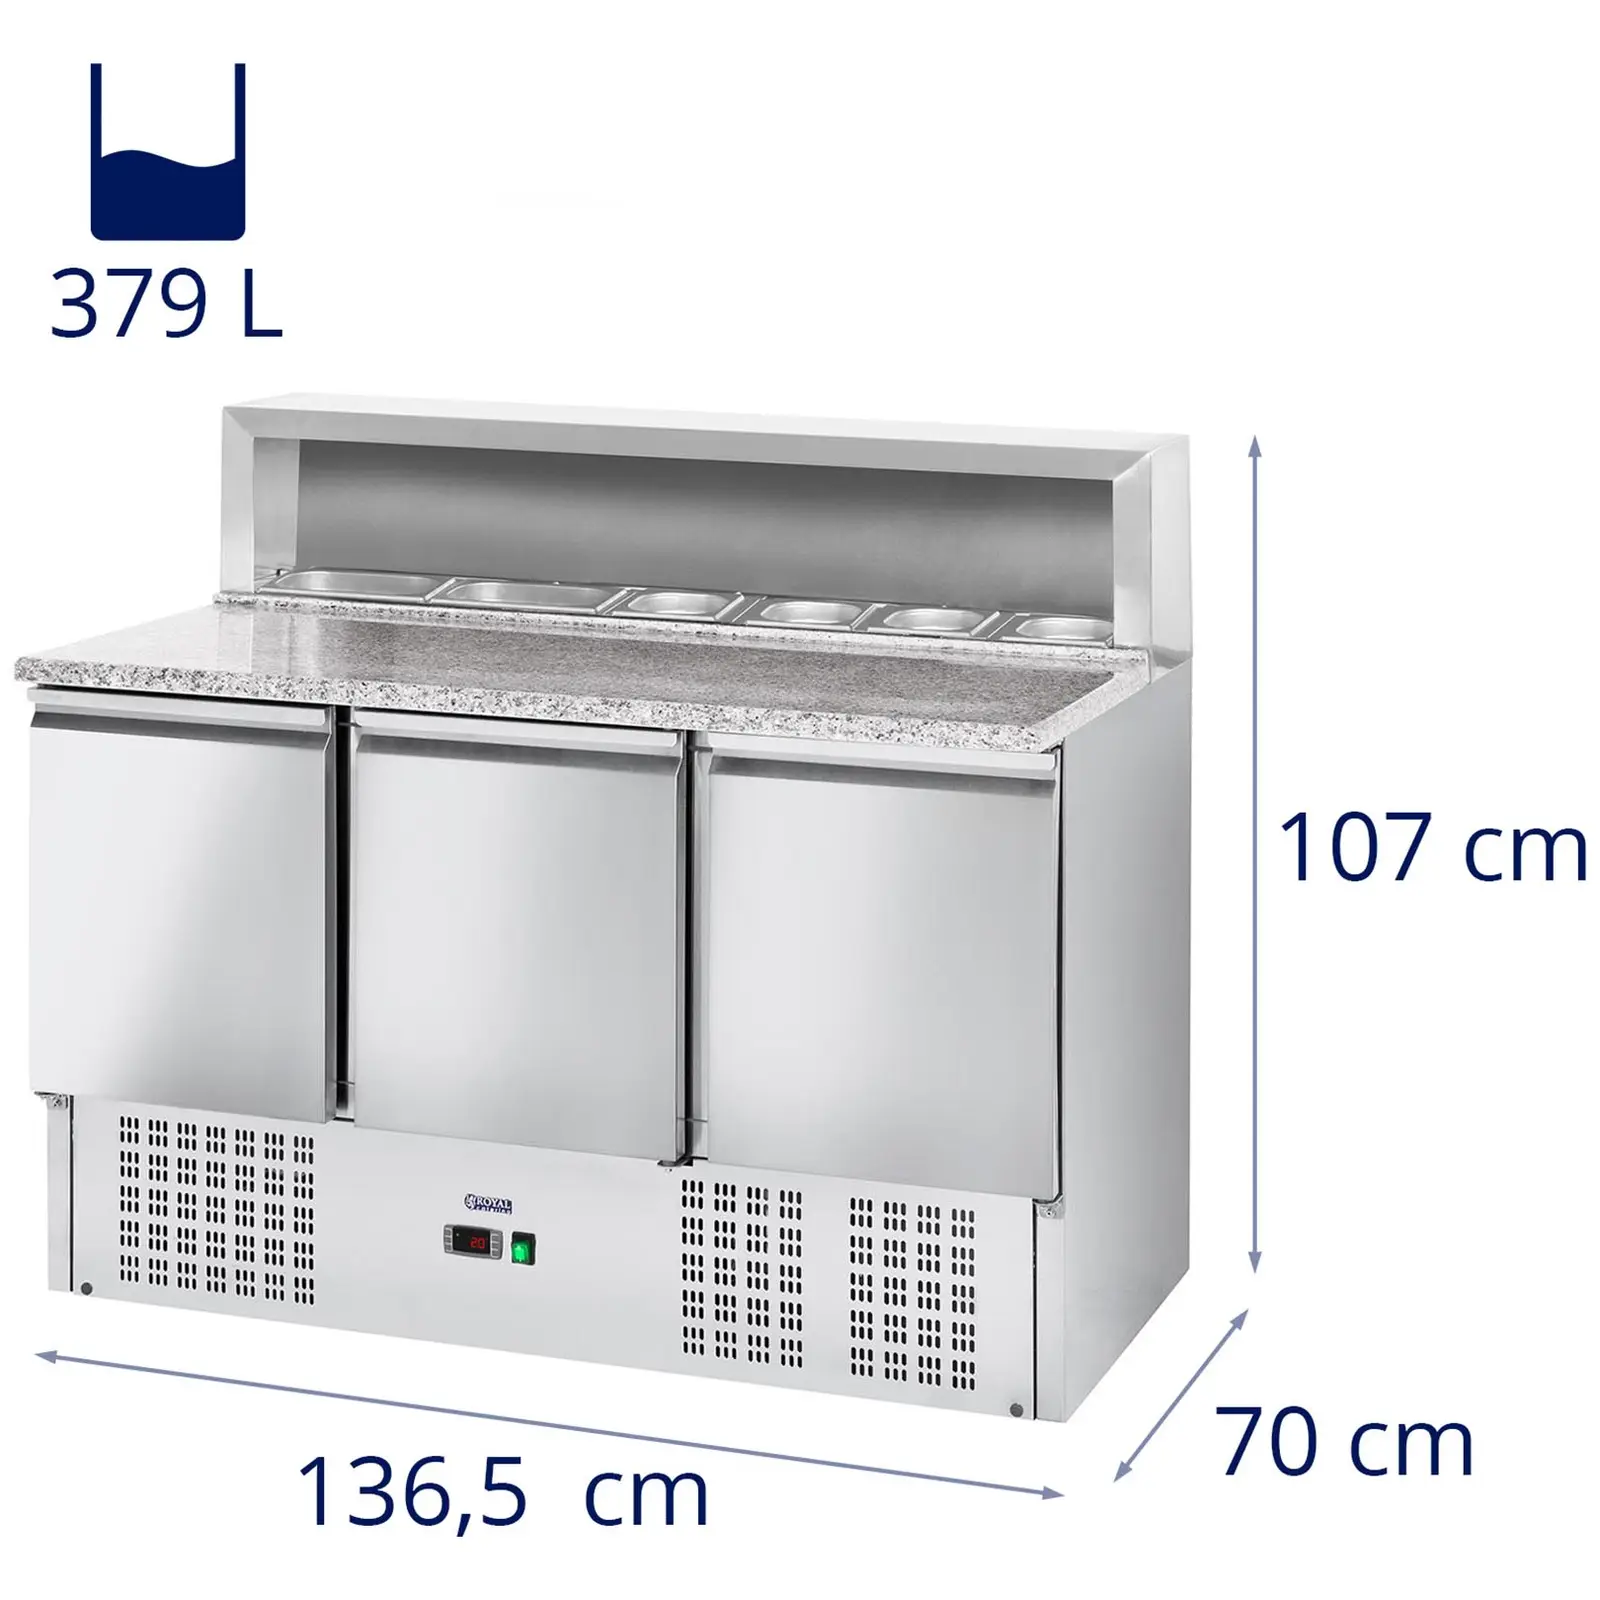 Pizzakühltisch - 379 L - Granitarbeitsplatte - 3 Türen